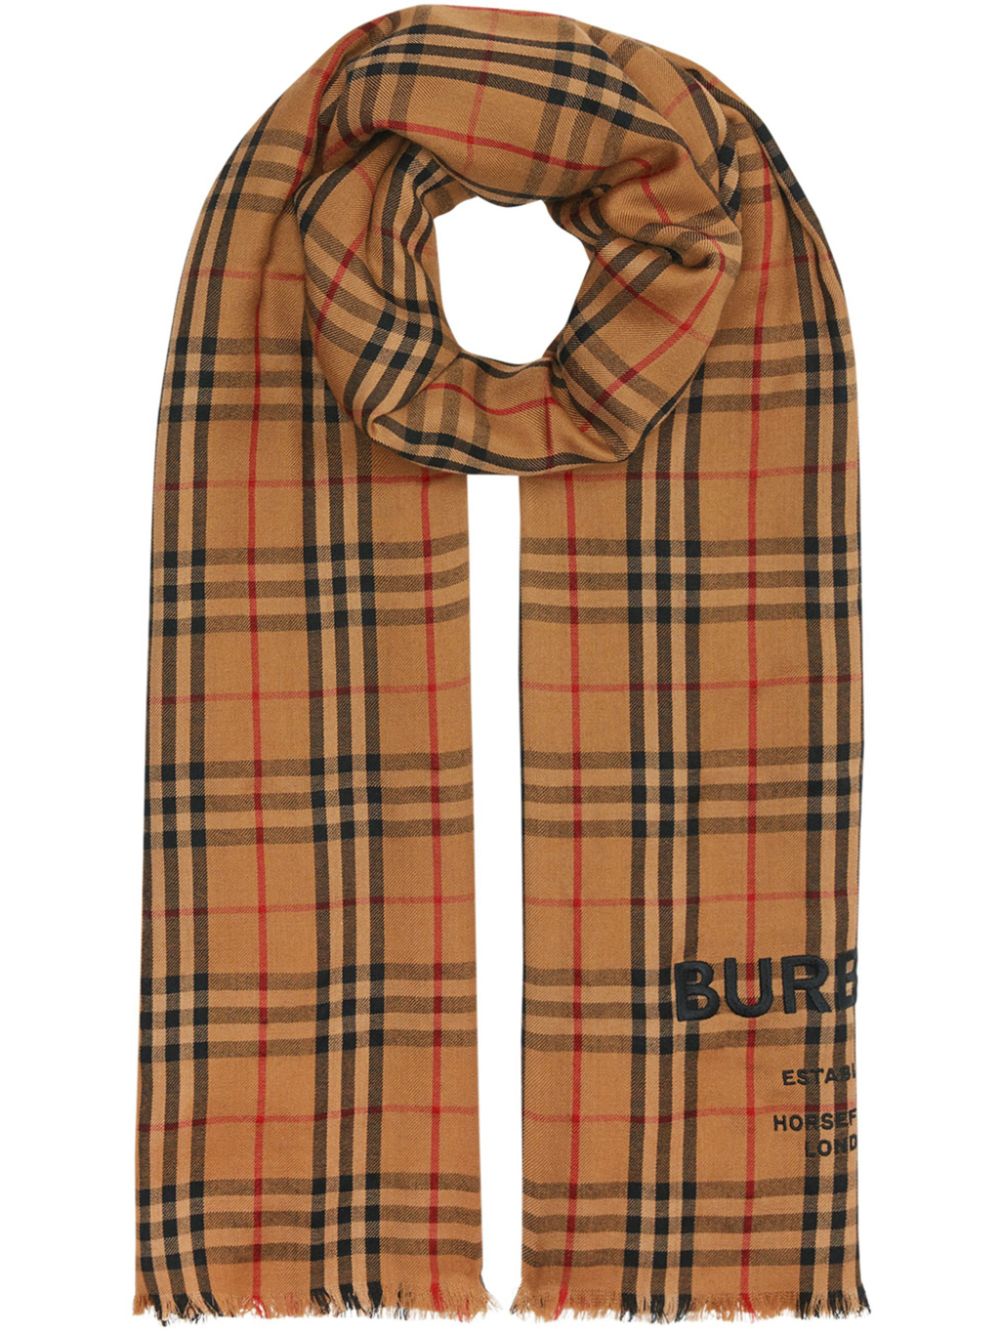 фото Burberry легкий кашемировый шарф в клетку vintage check с вышивкой